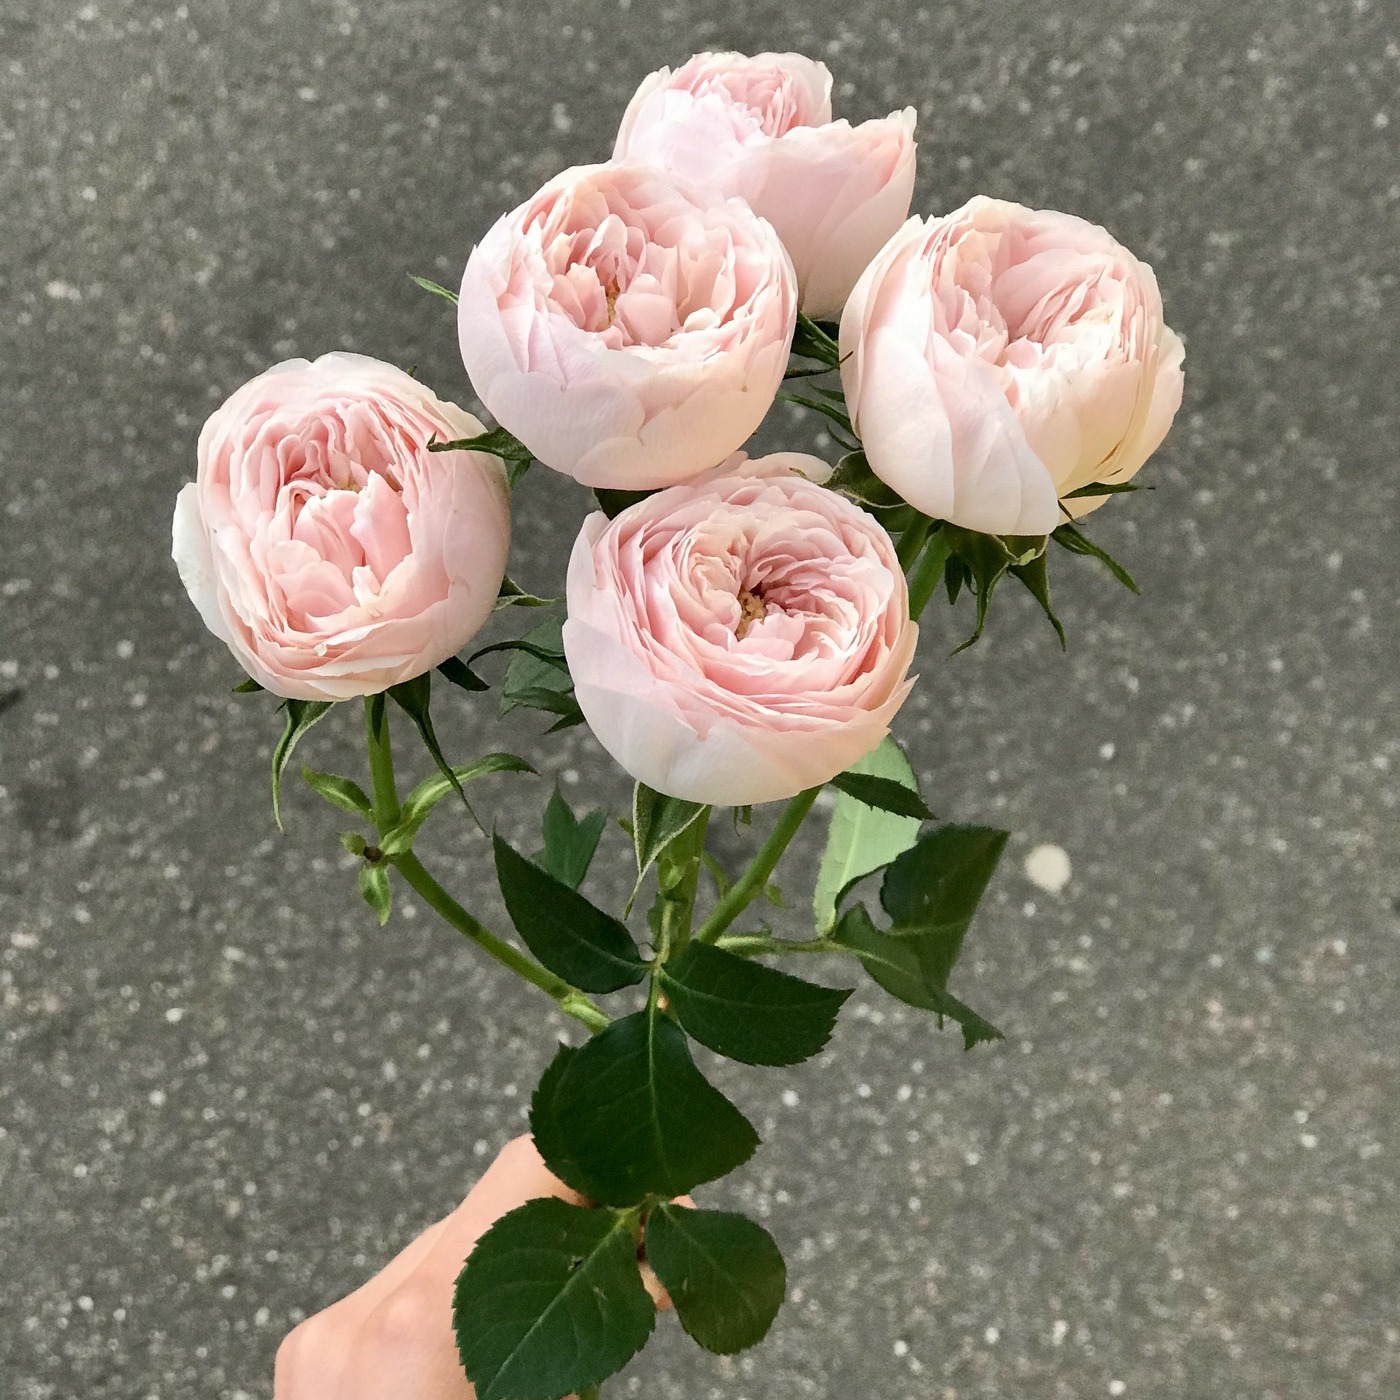 Mansfield роза екатеринбург купить букет цветов недорого